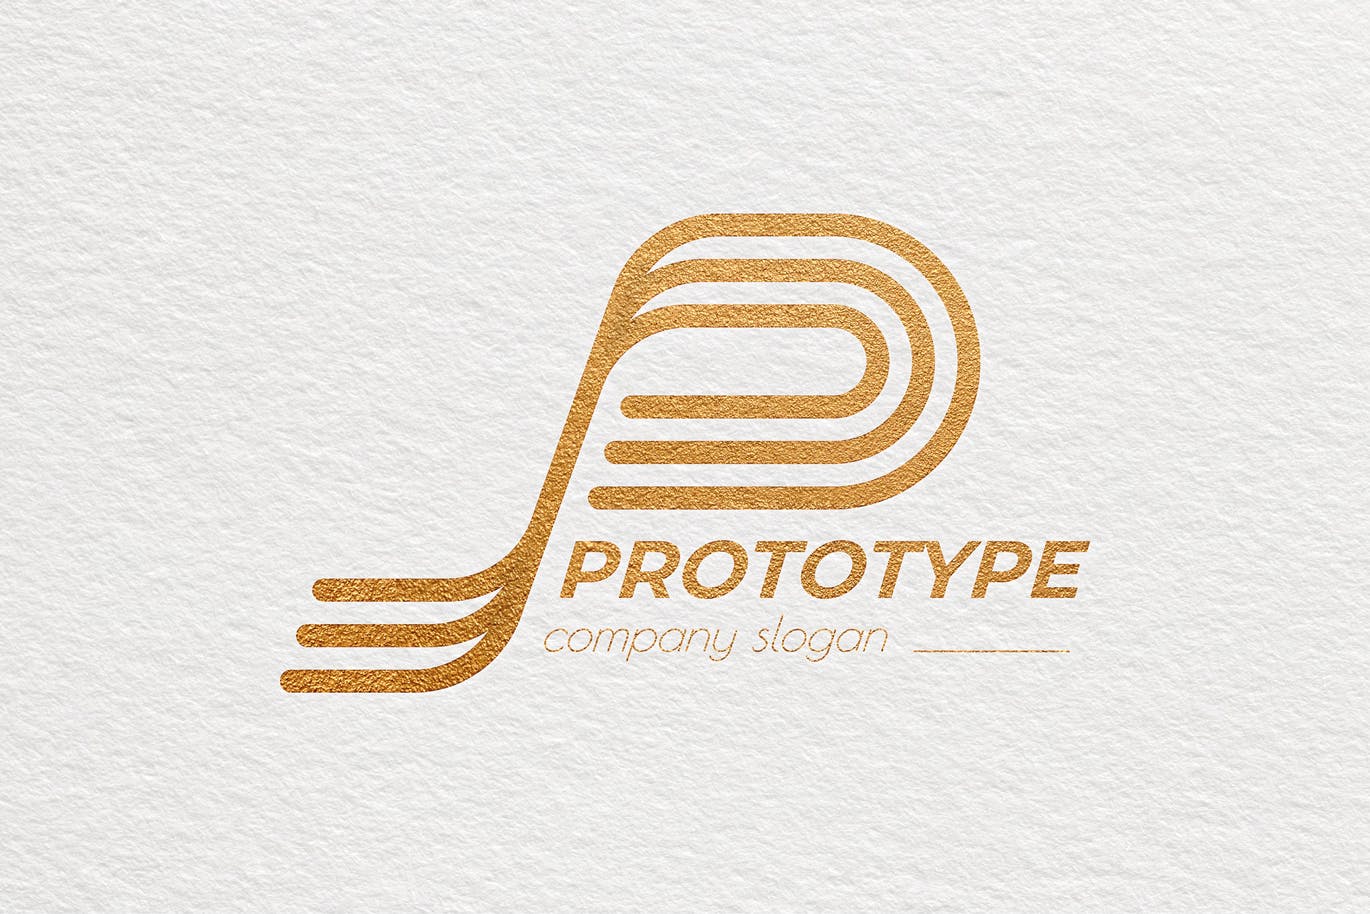 原型设计主题创意图形Logo设计16图库精选模板 Prototype Creative Logo Template插图(3)